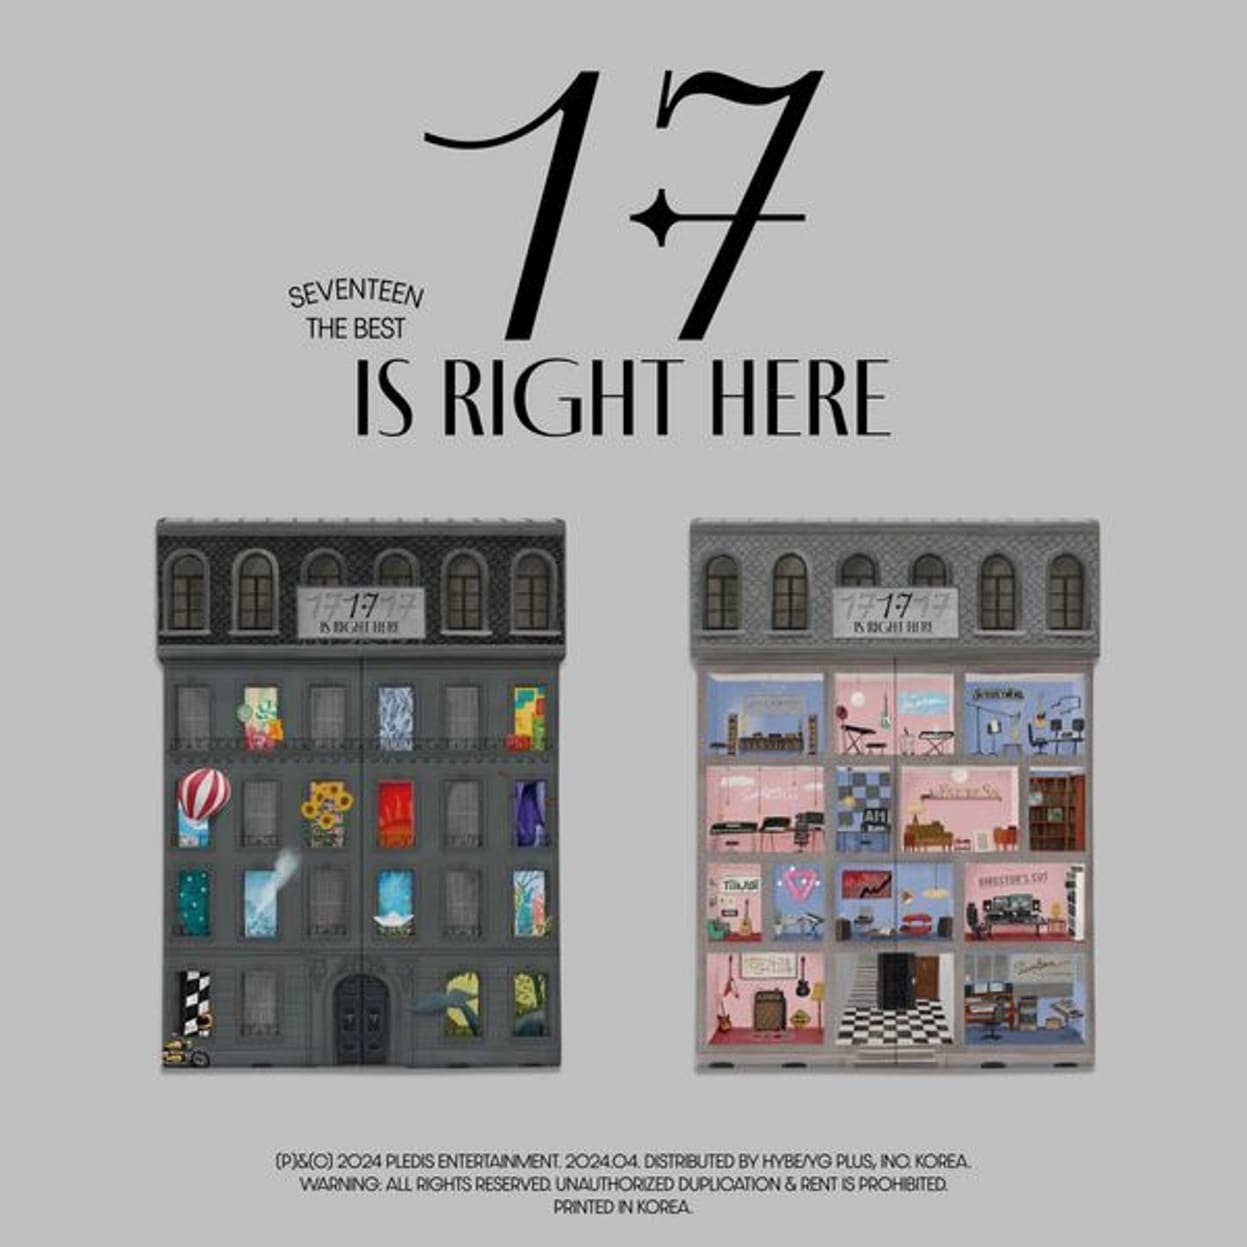 (2종 세트) 세븐틴 (SEVENTEEN) - 베스트 앨범 [17 IS RIGHT HERE]